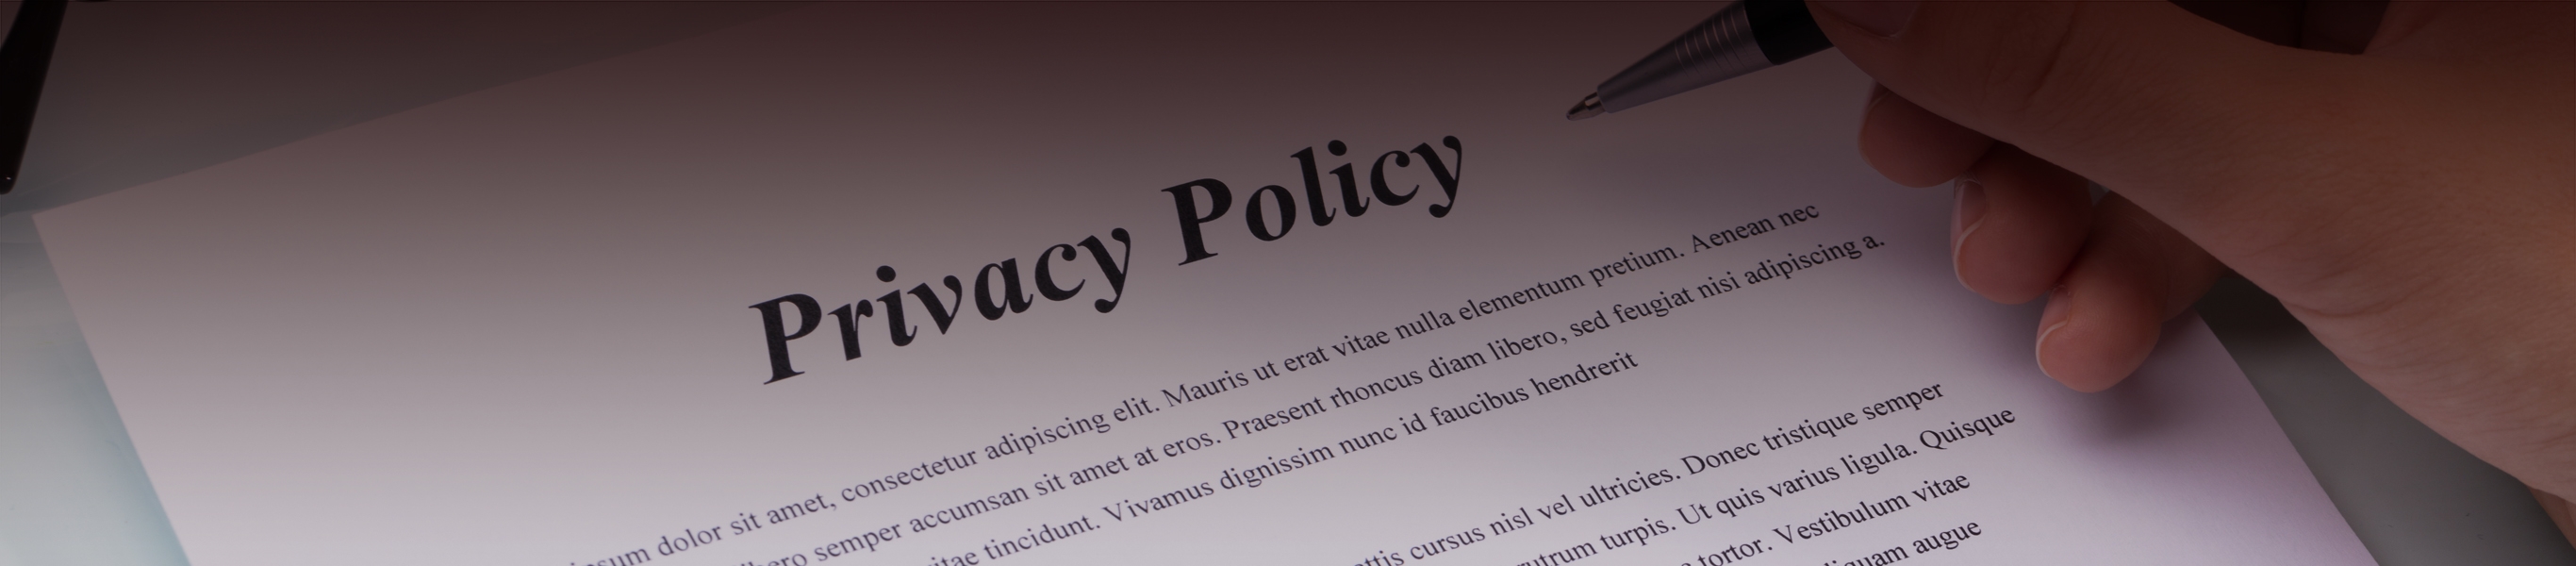 プライバシーポリシー Privacy Policy